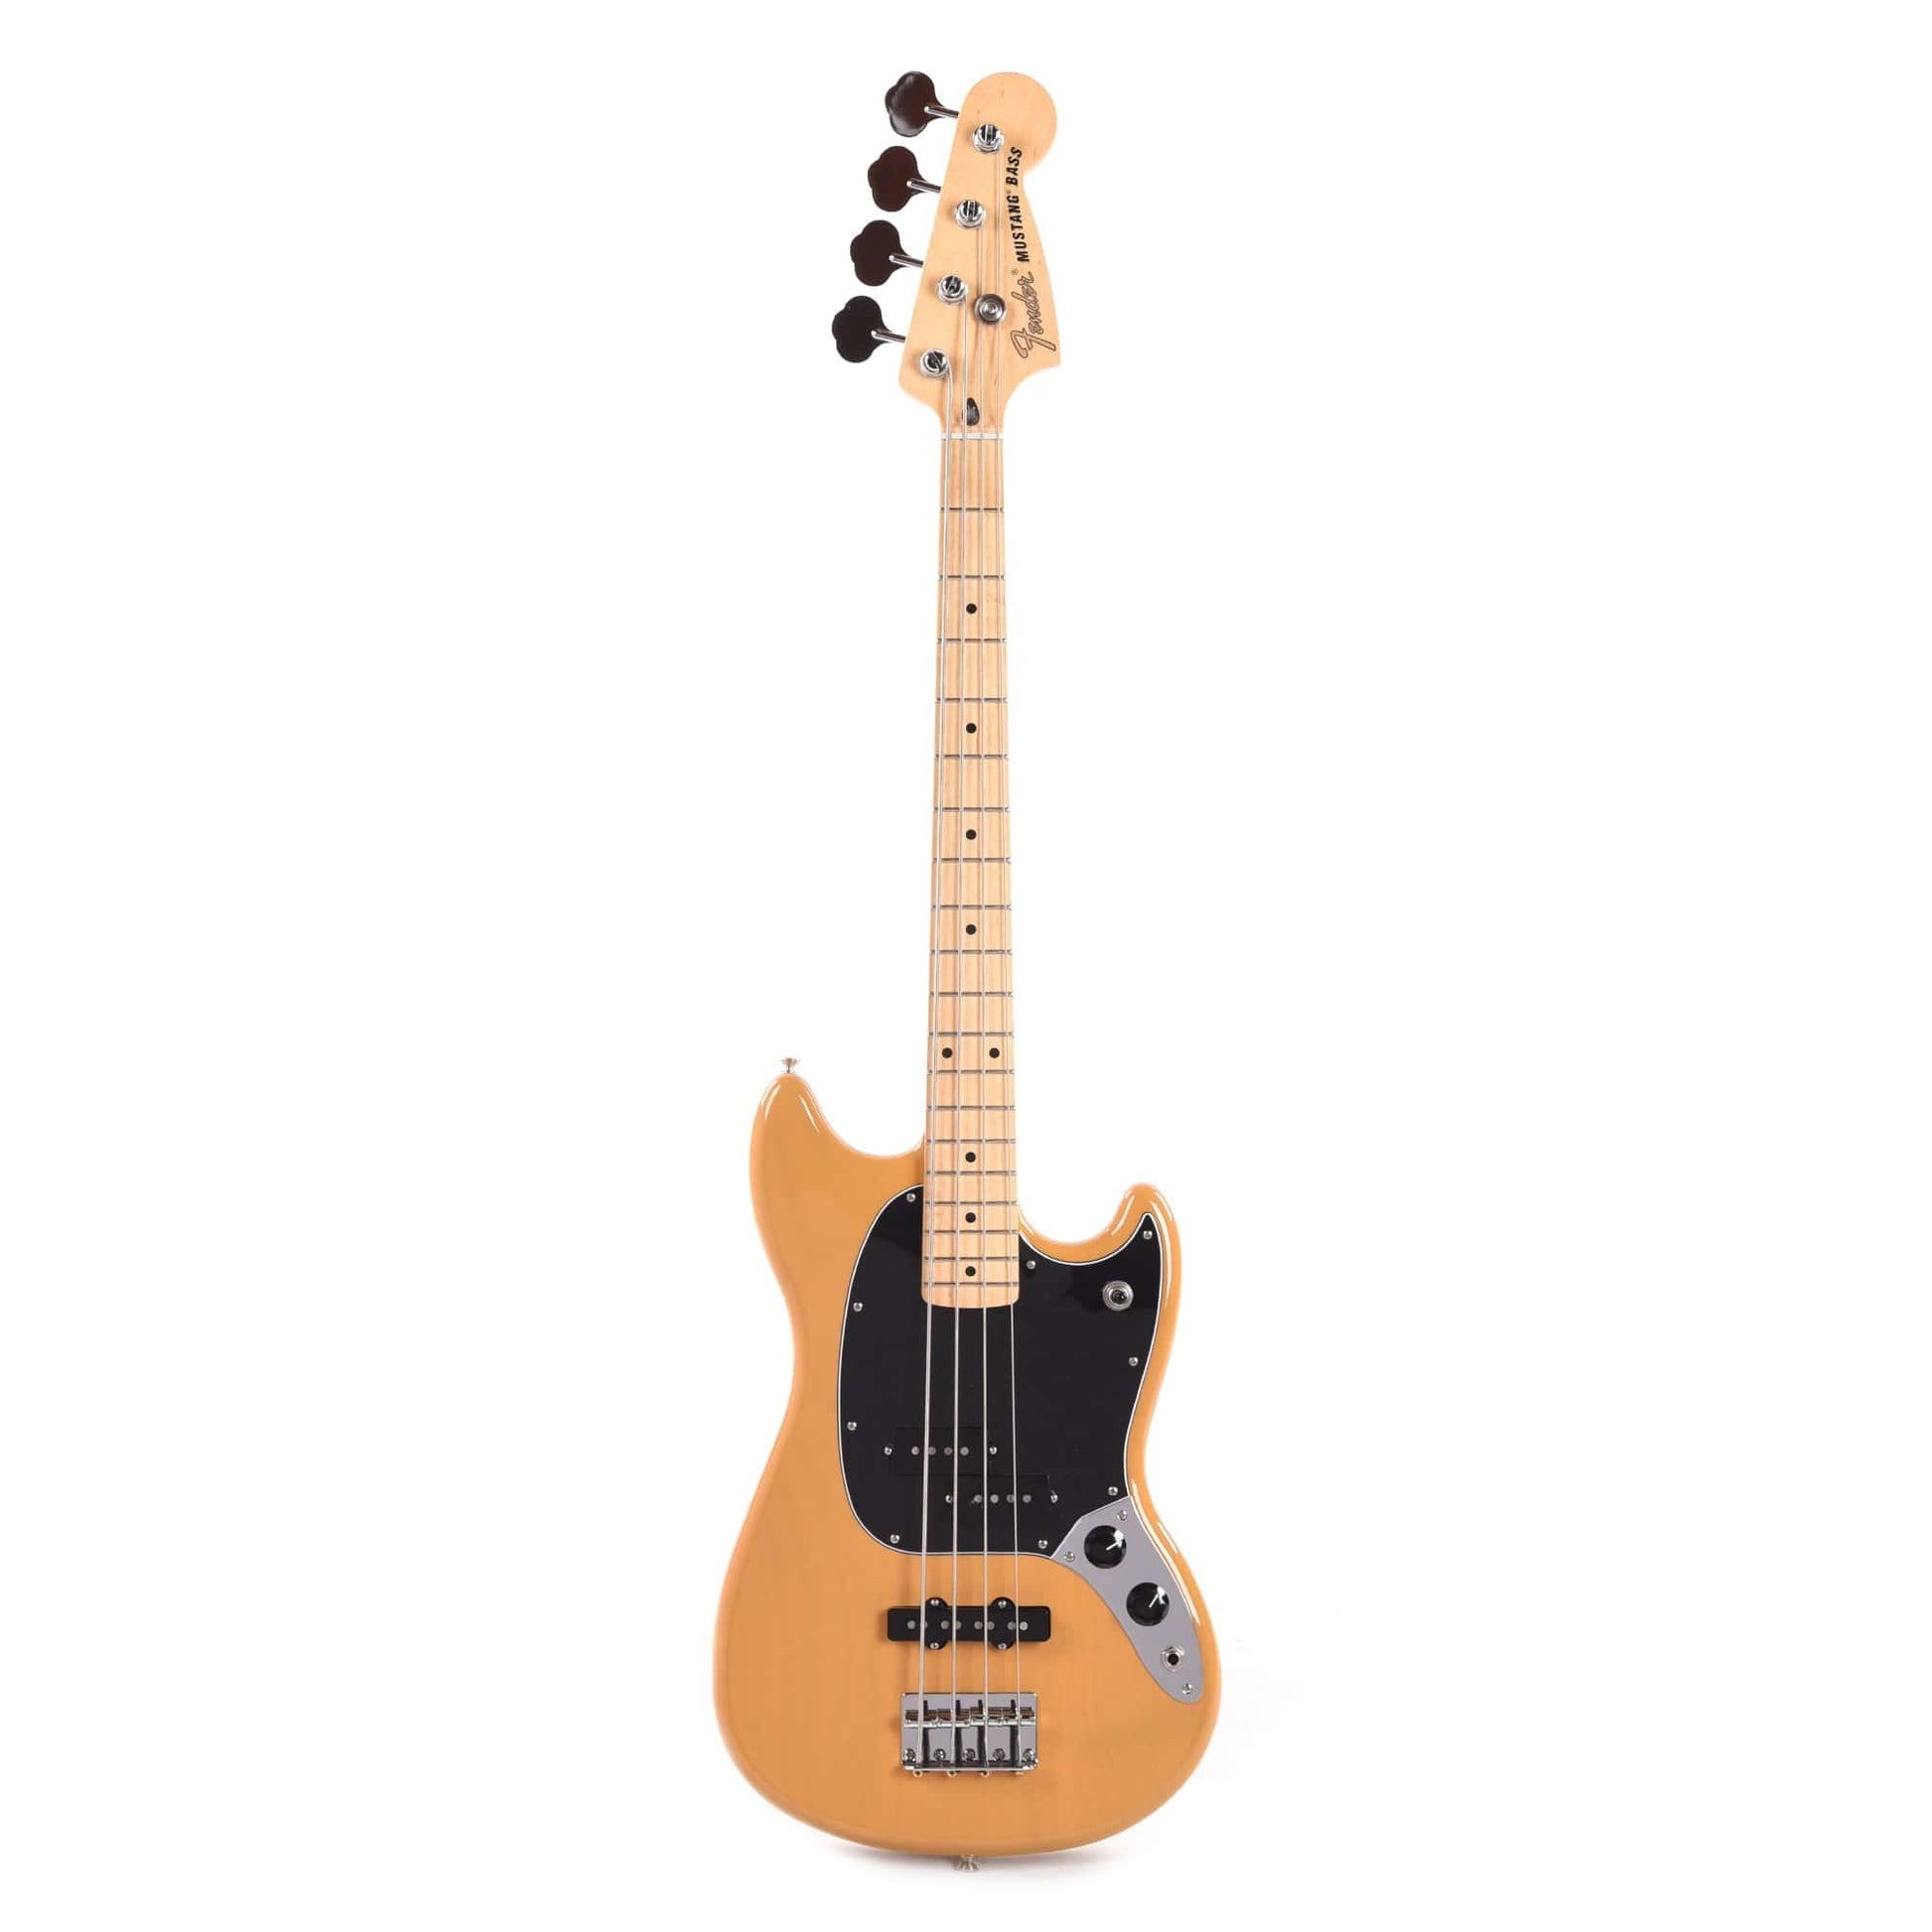 Fender Offset Series Mustang Bass PJ Butterscotch Blonde w/3-Ply Black Pickguard Bass Guitars / 4-String